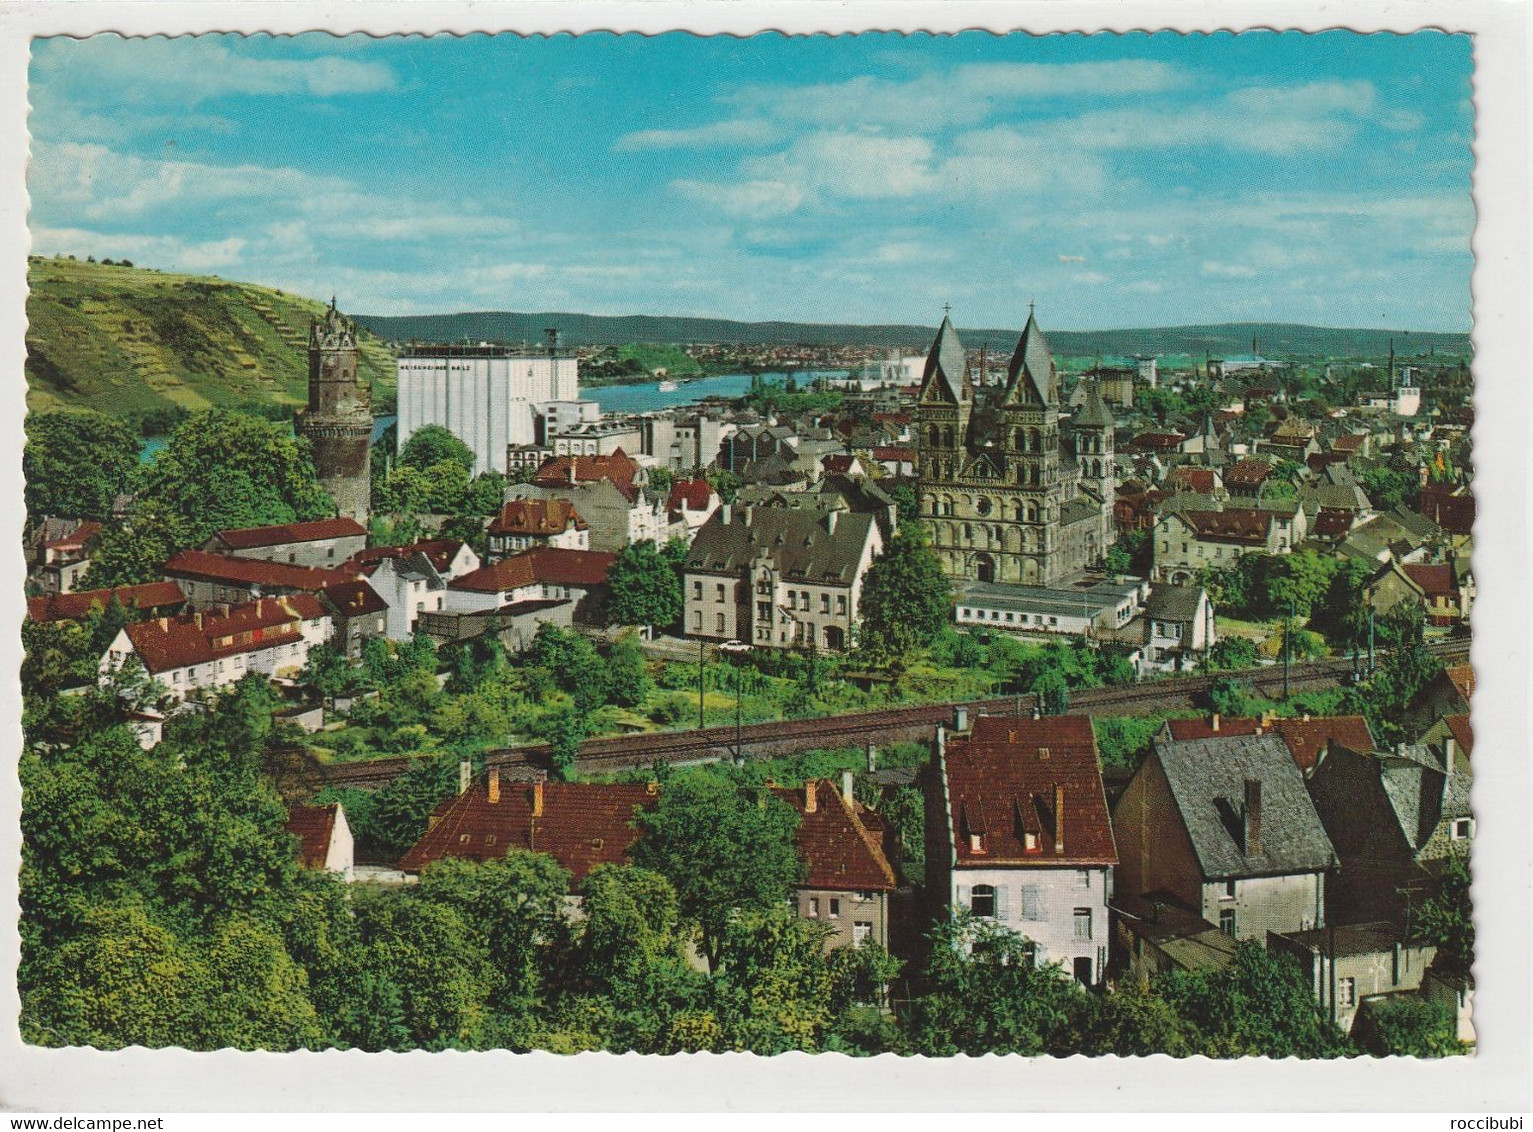 Andernach, Rheinland-Pfalz - Andernach